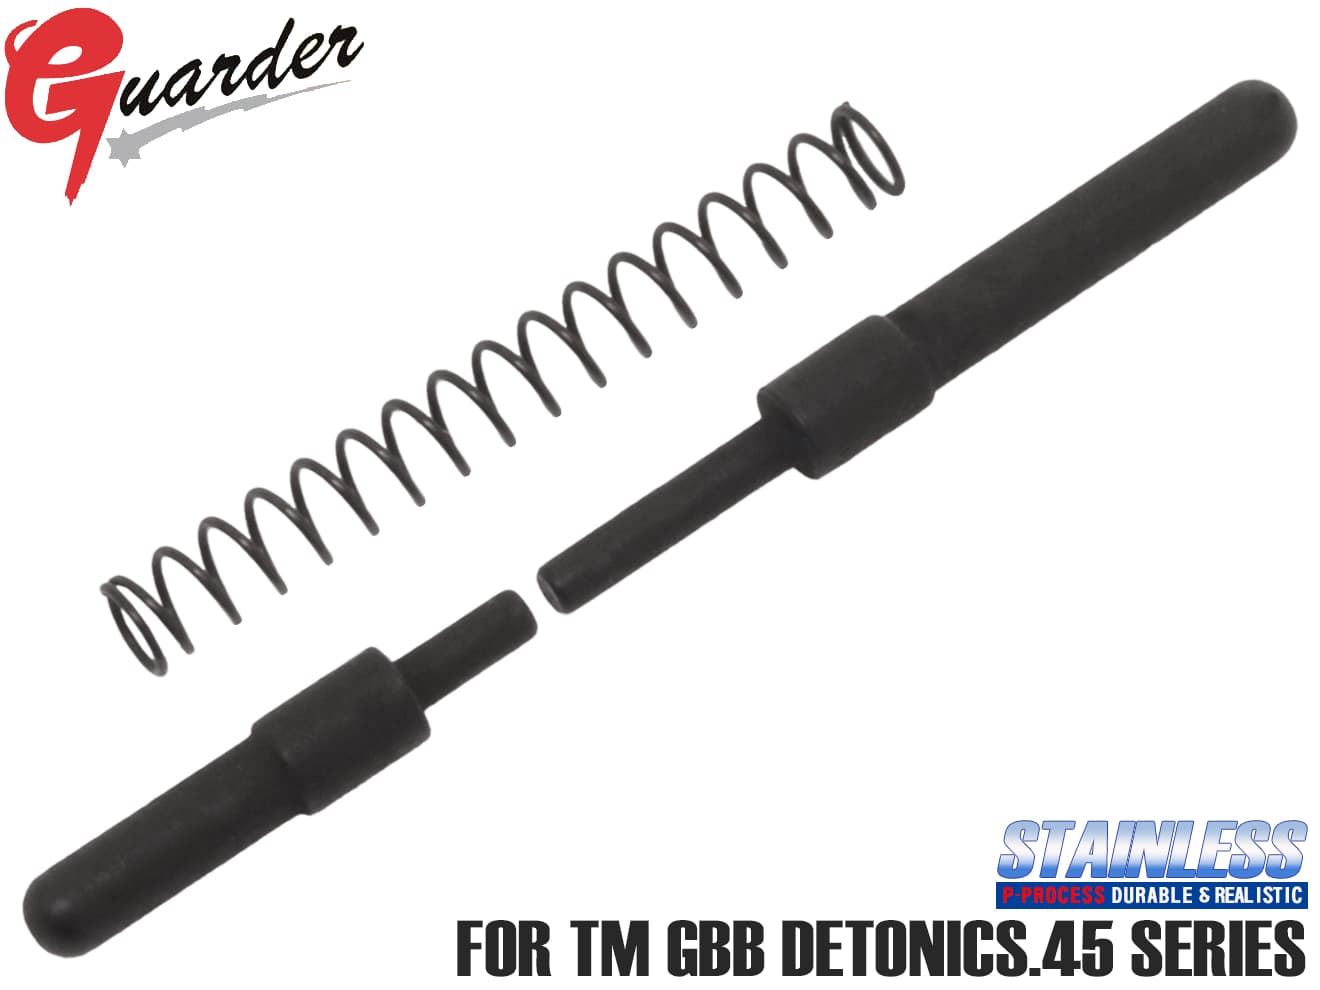 DETONICS-30(BK)■GUARDER ステンレス(P-PROCESS) CNC プランジャーピンセット for マルイ DETONICS .45◆リアルな質感 高い表面硬度 デトニクス CNC 加工 黒染